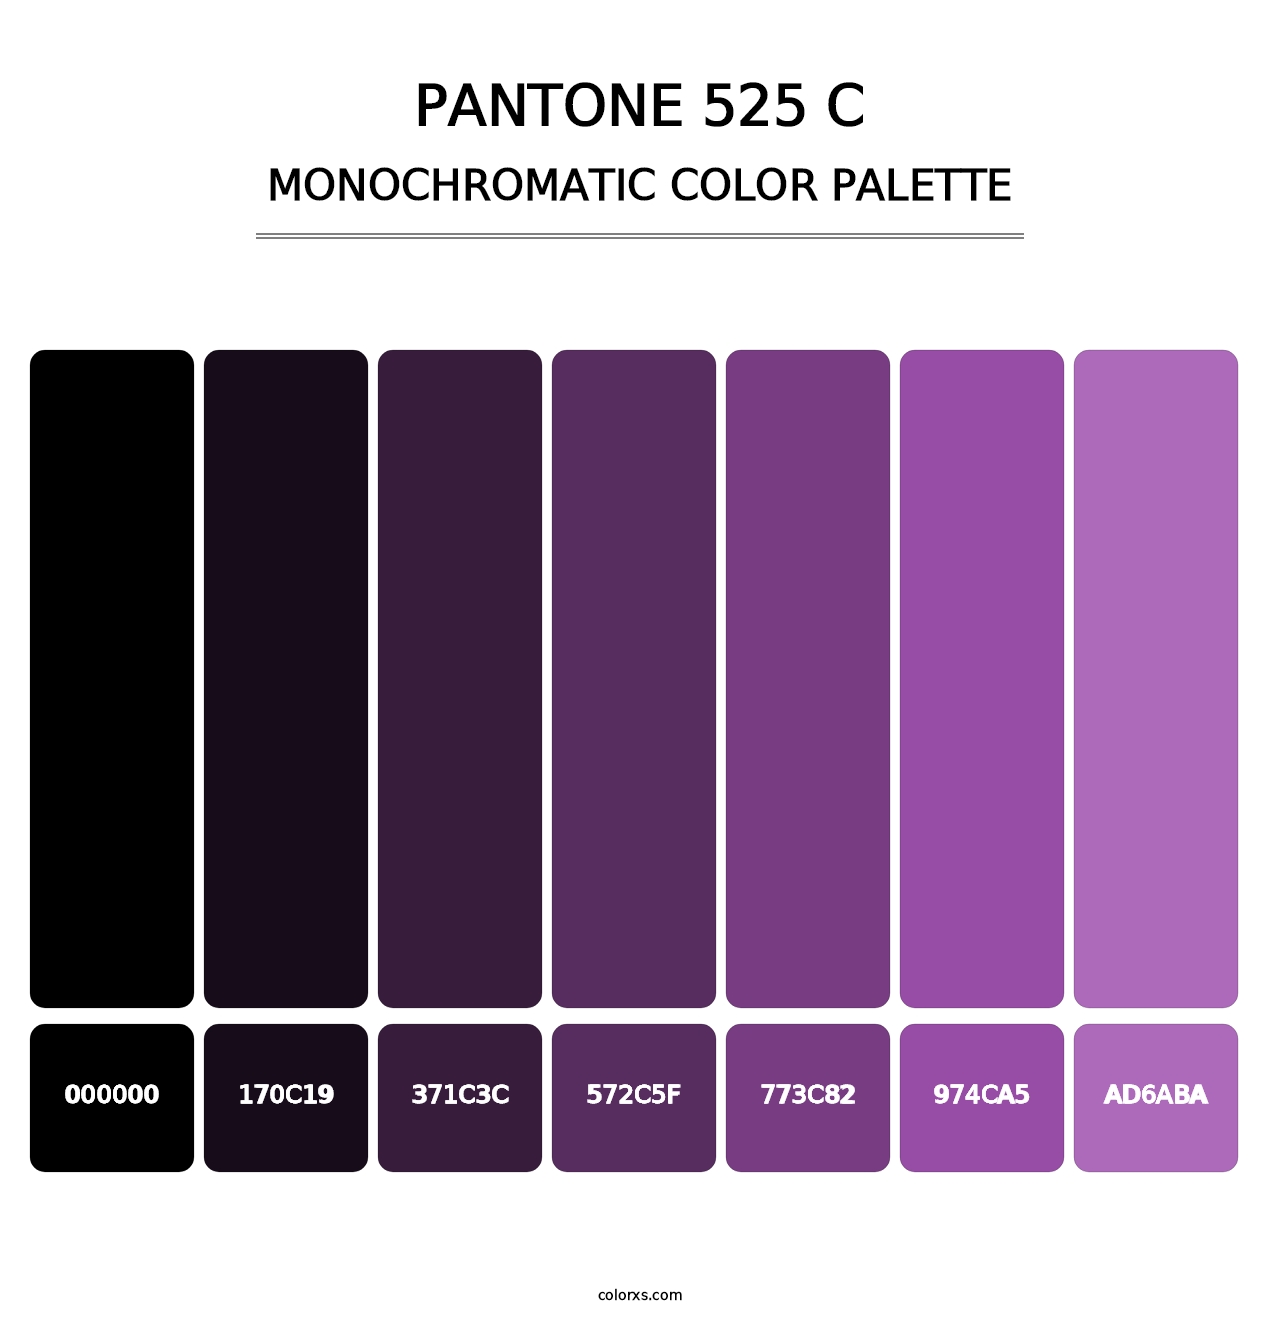 PANTONE 525 C - Monochromatic Color Palette